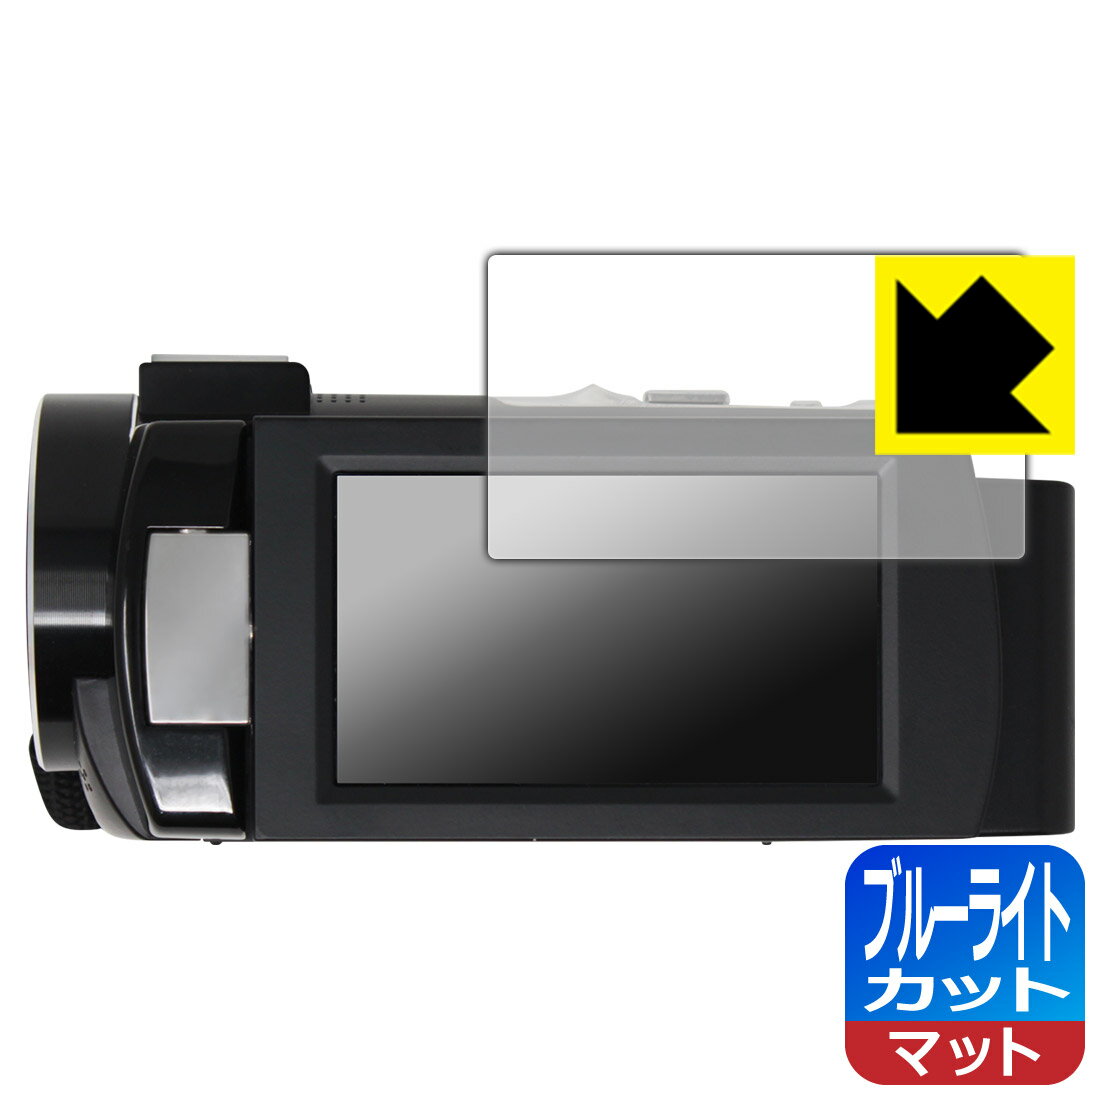 ブルーライトカット【反射低減】保護フィルム KEIYO 4K コンパクトビデオカメラ AN-S093 日本製 自社製造直販